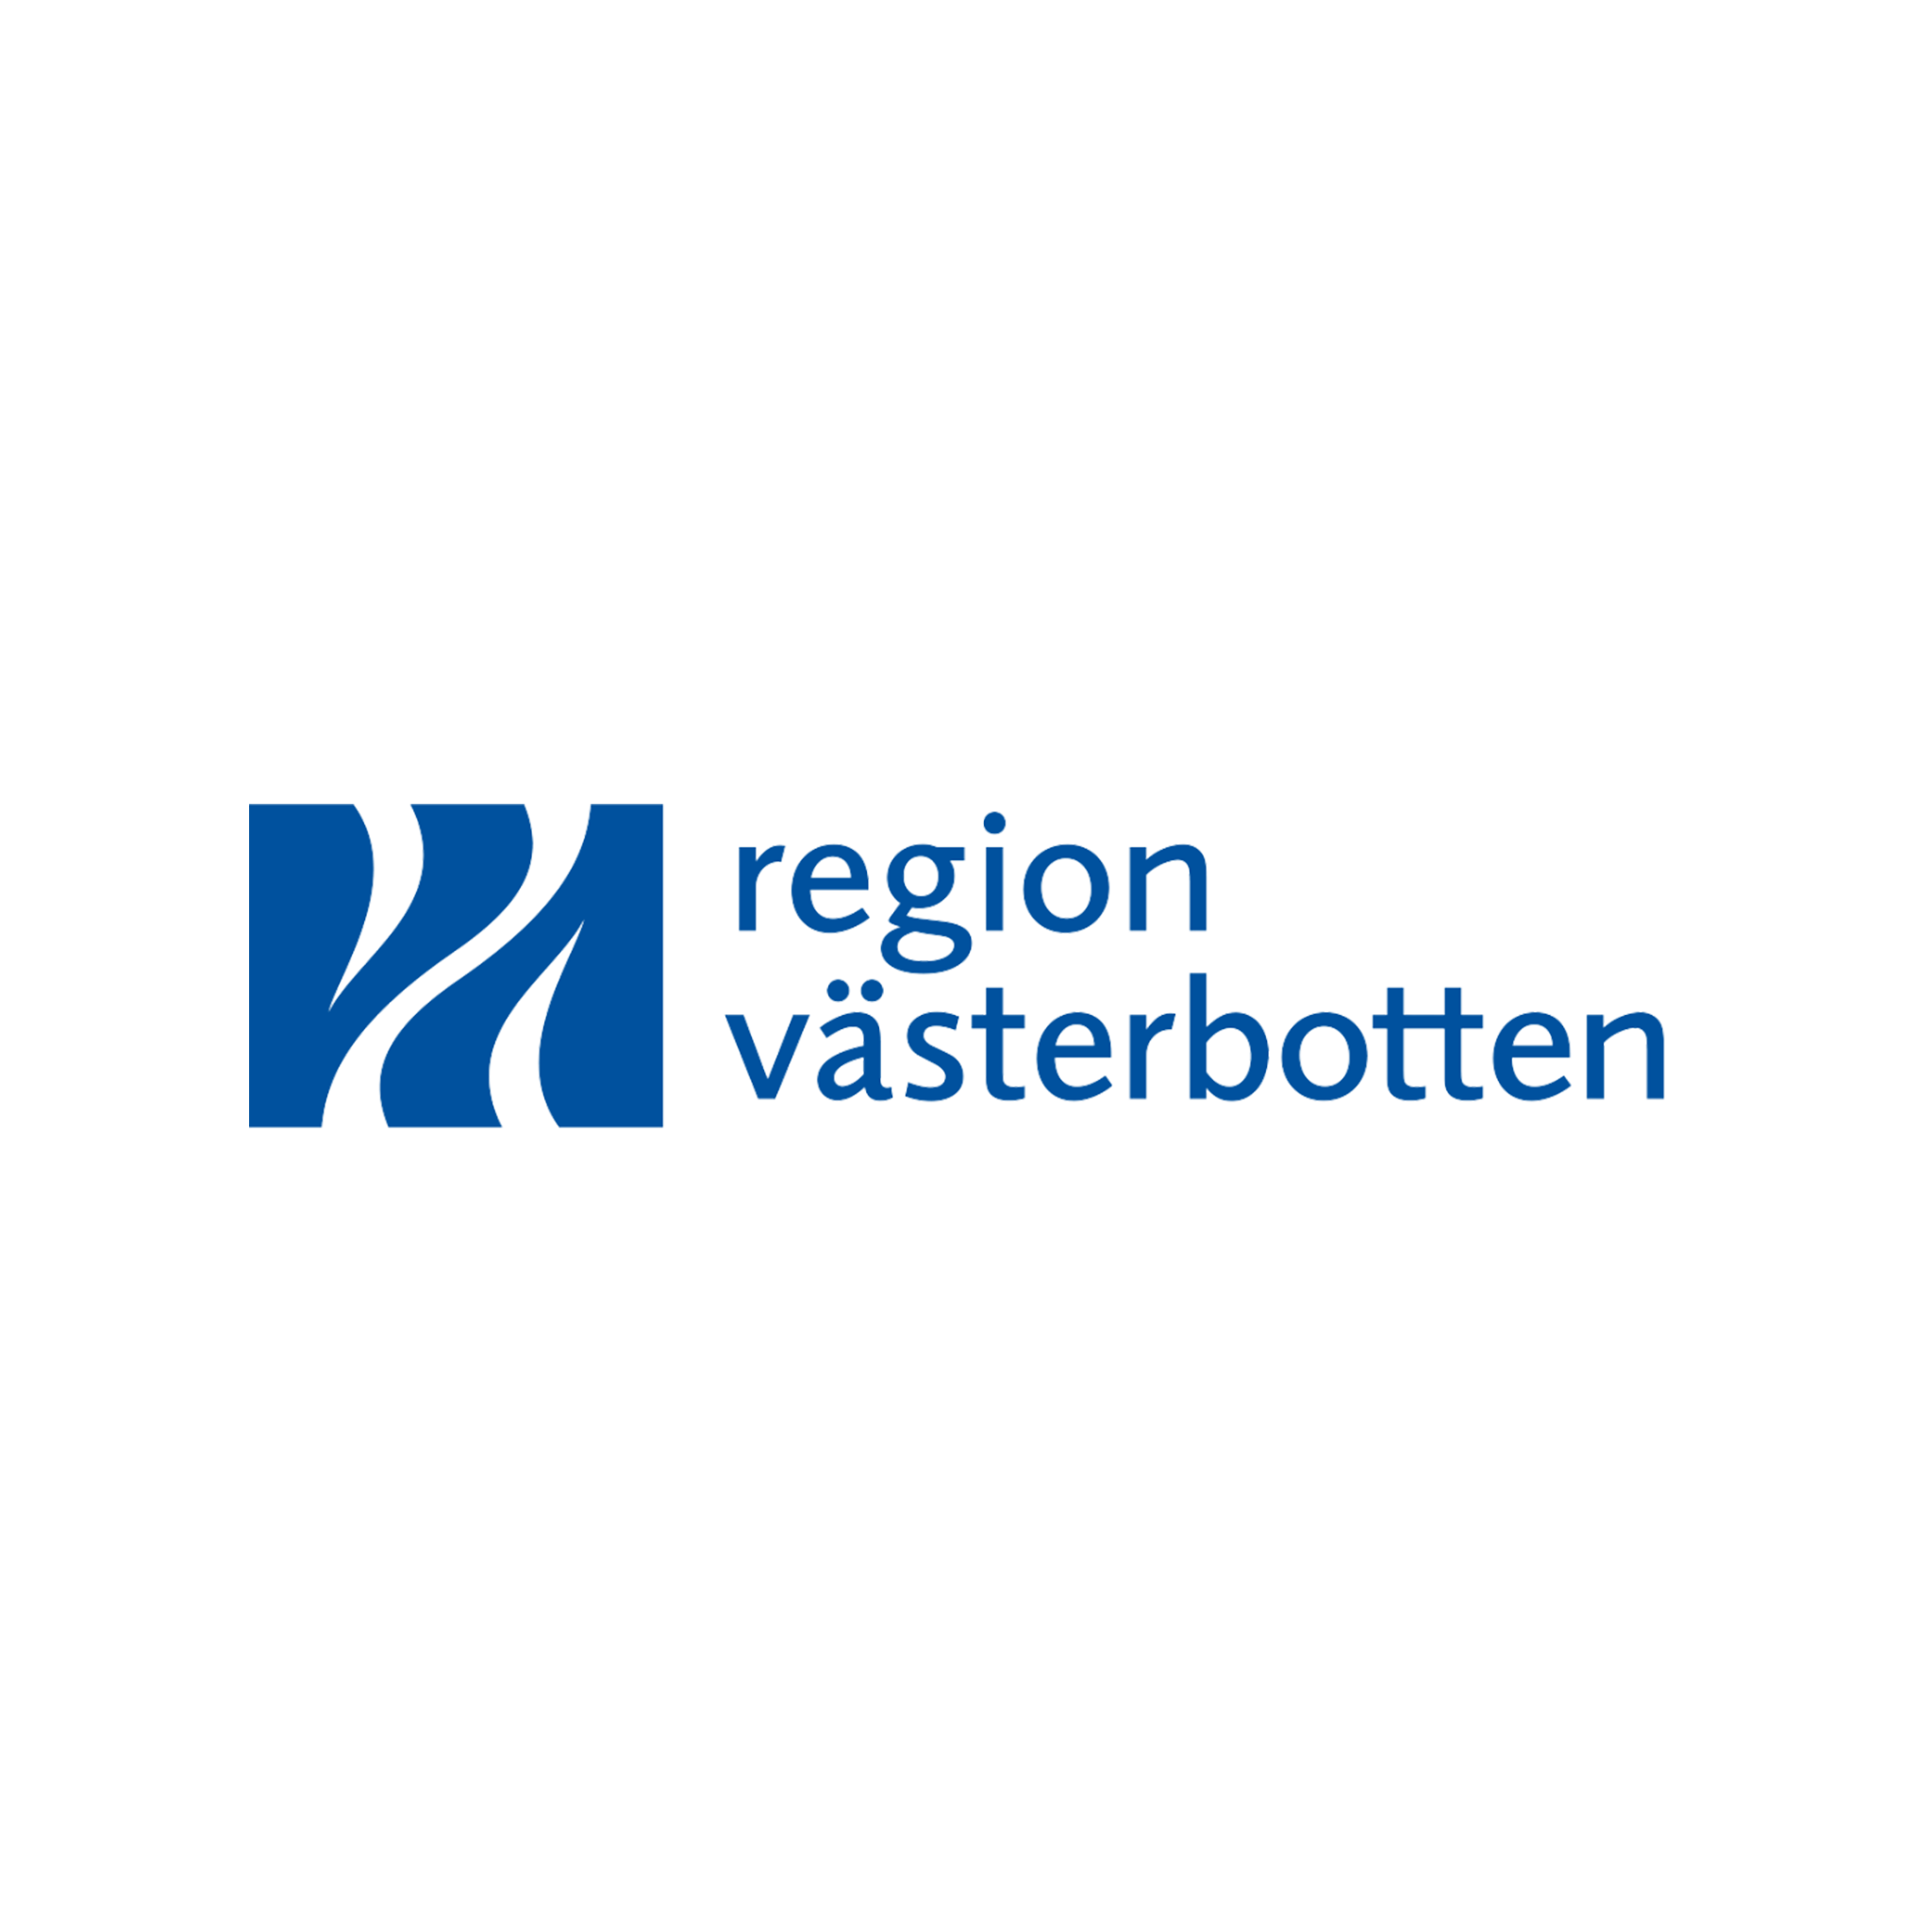 Region Västerbotten logo in blue